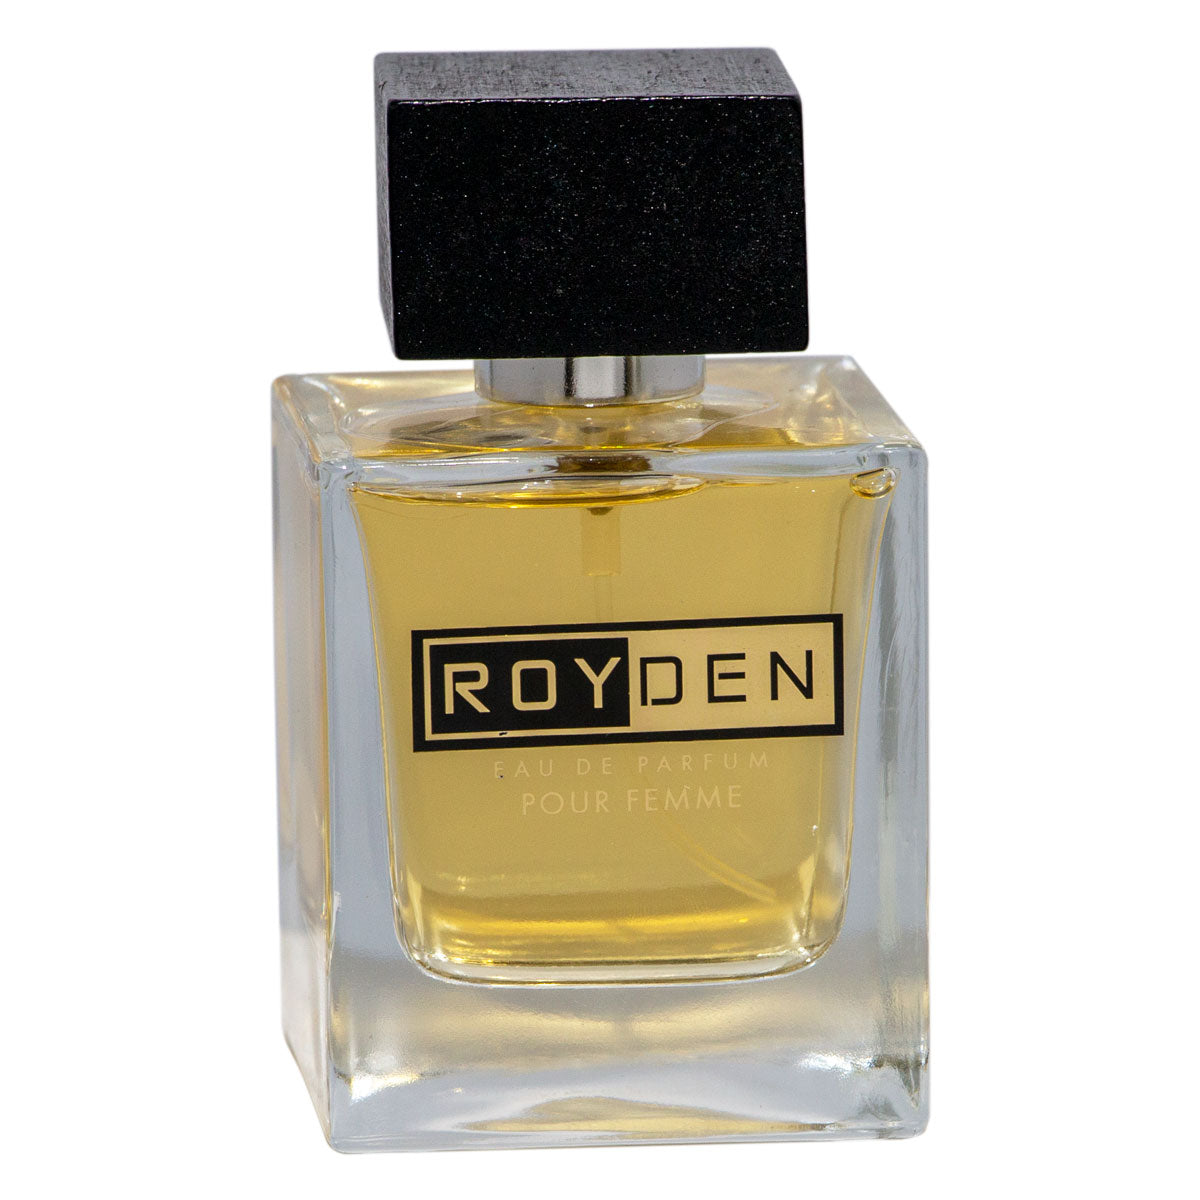 Royden Pour Femme for Women EDP 100ml - samawa perfumes 